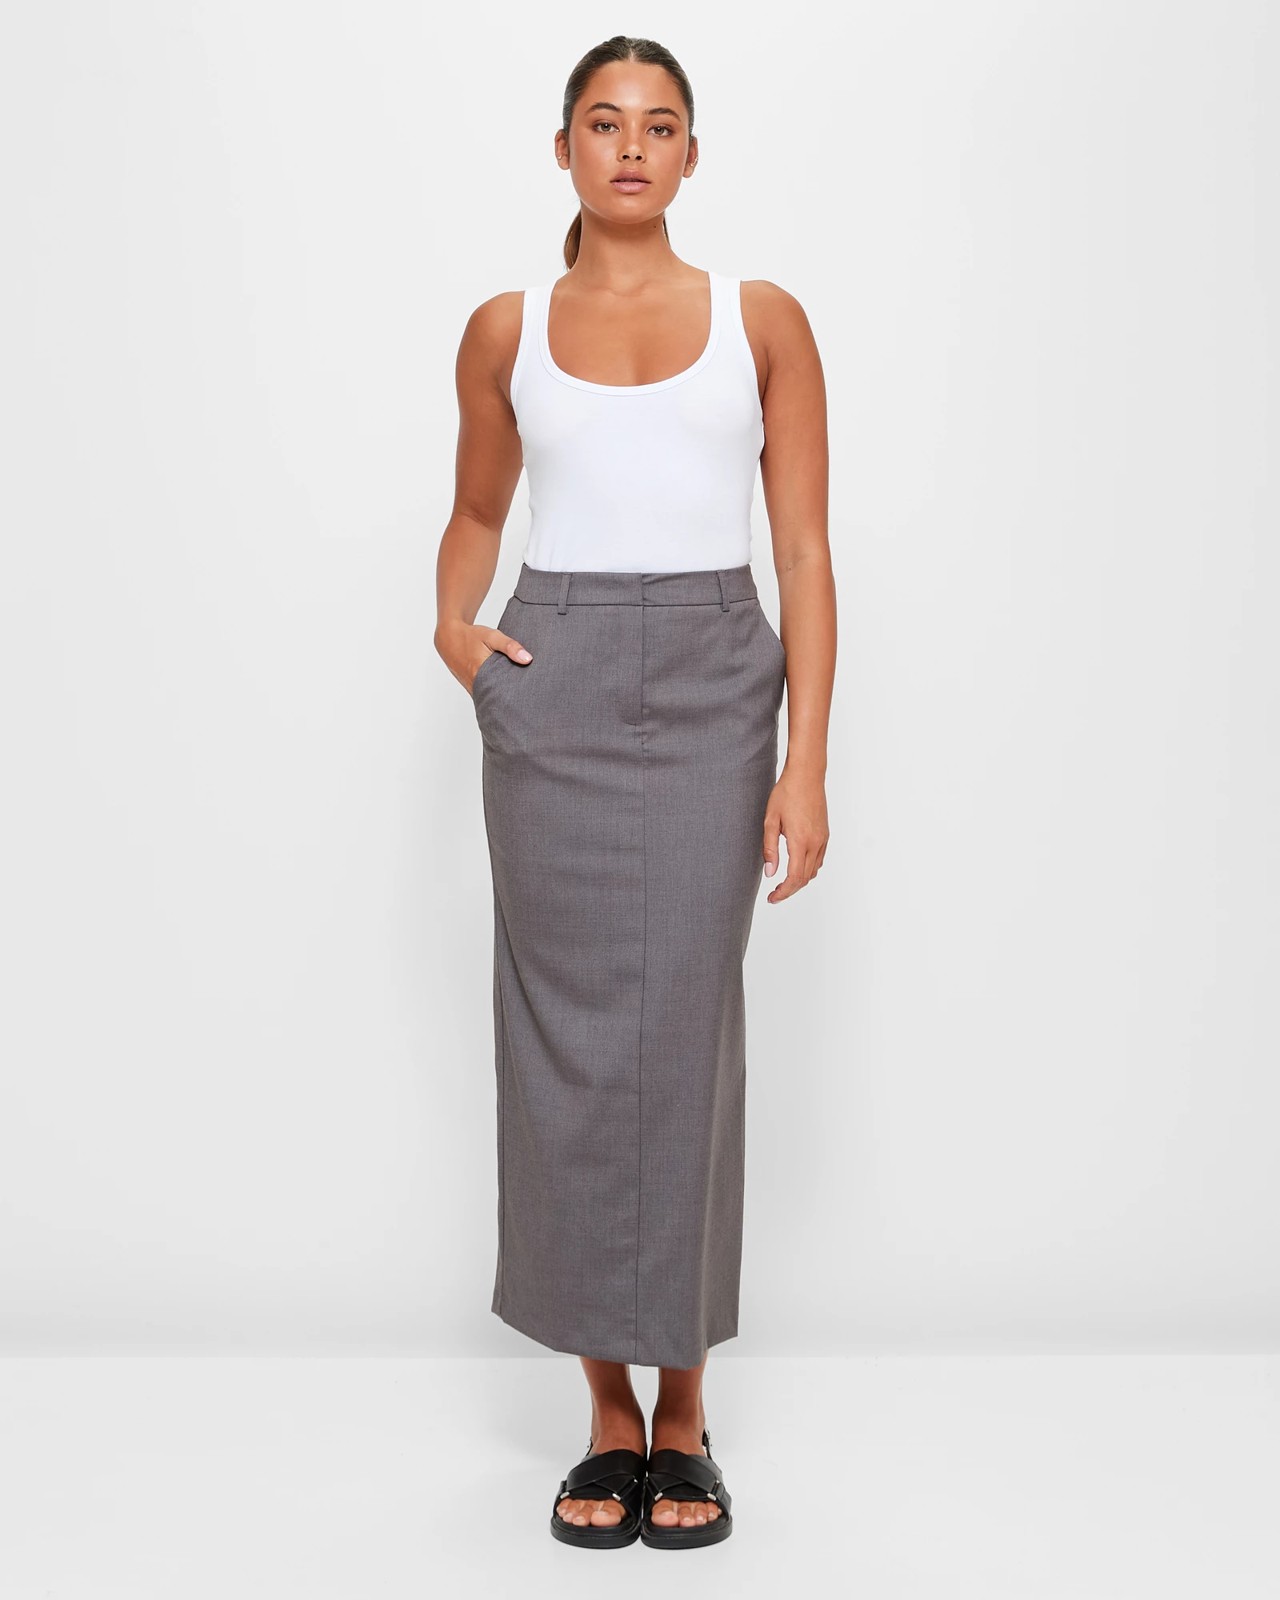 Tailored Column Skirt - Lily Loves | Target Australia